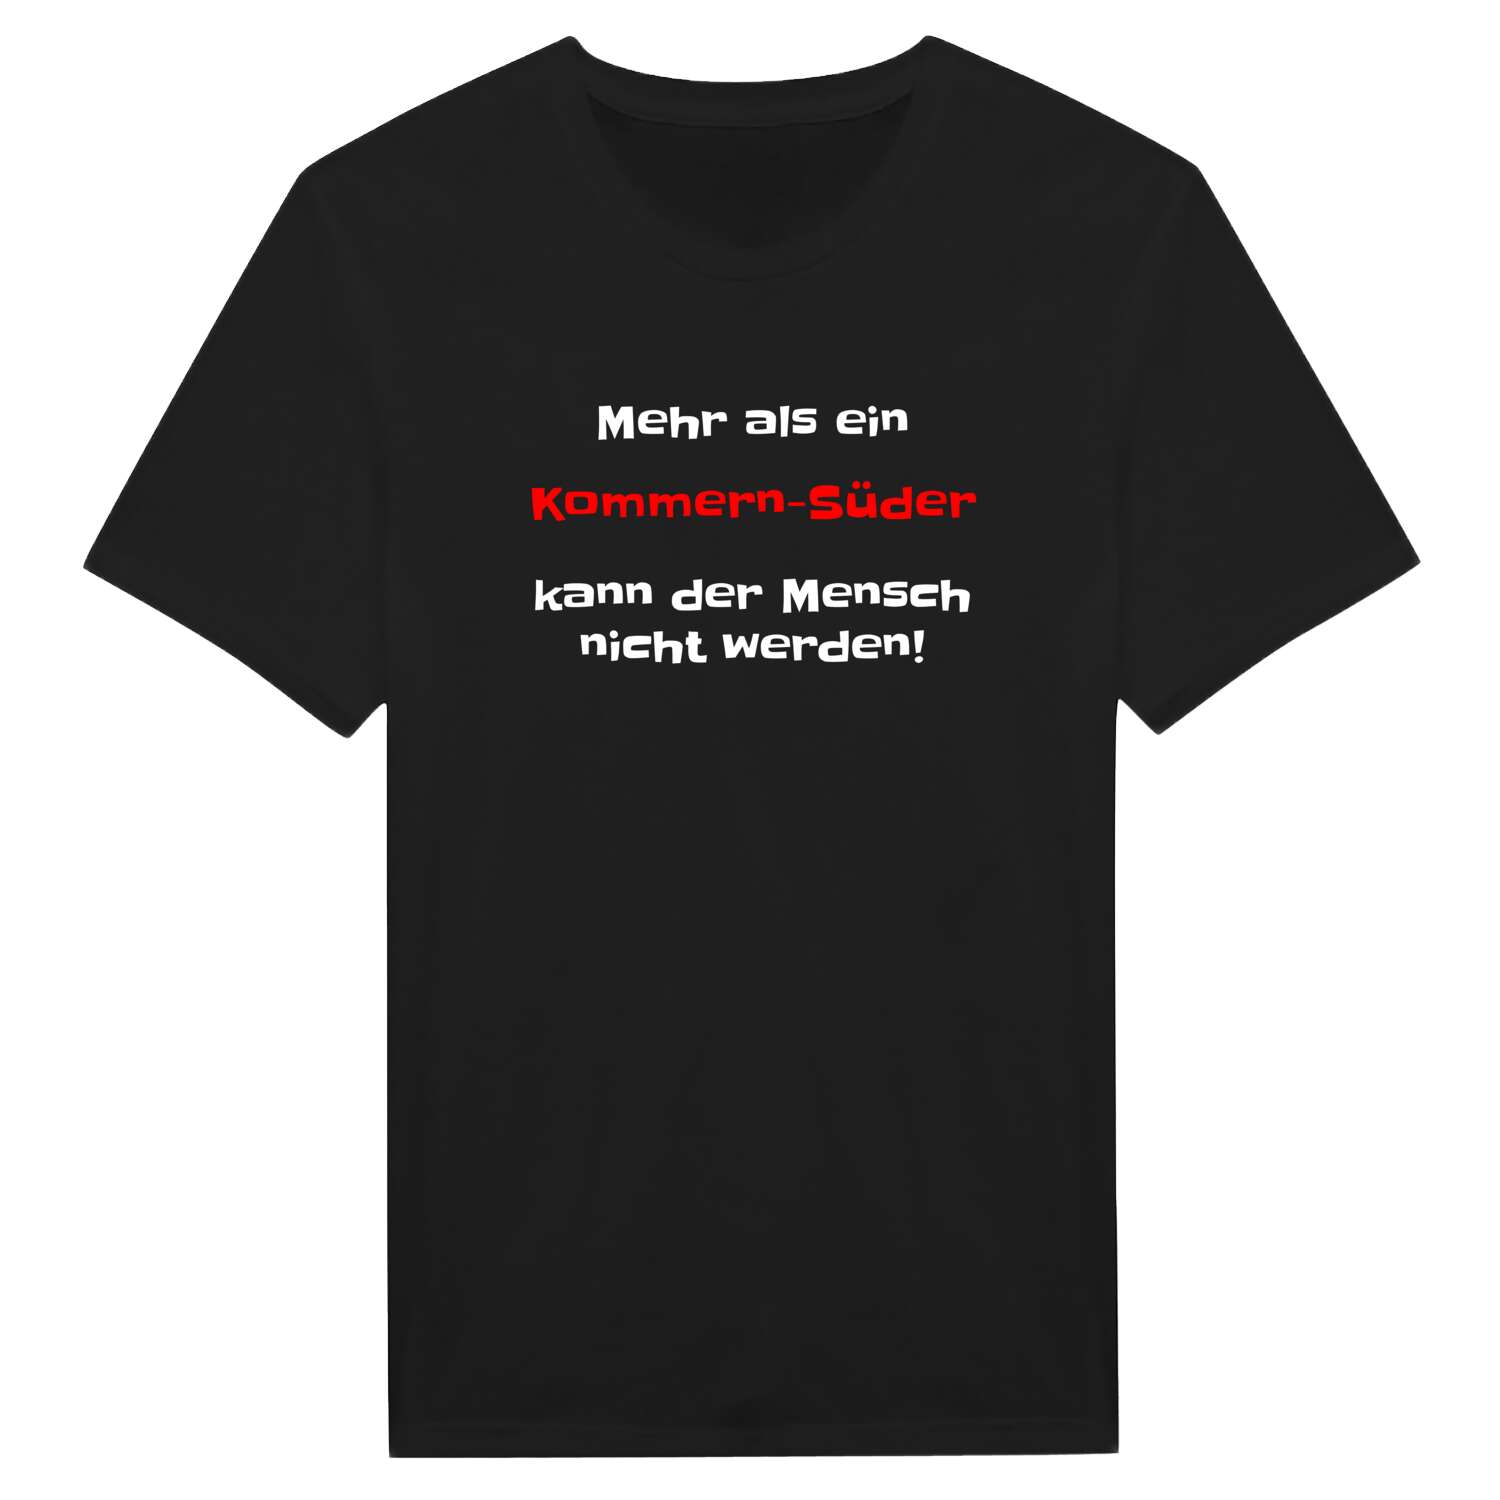 Kommern-Süd T-Shirt »Mehr als ein«